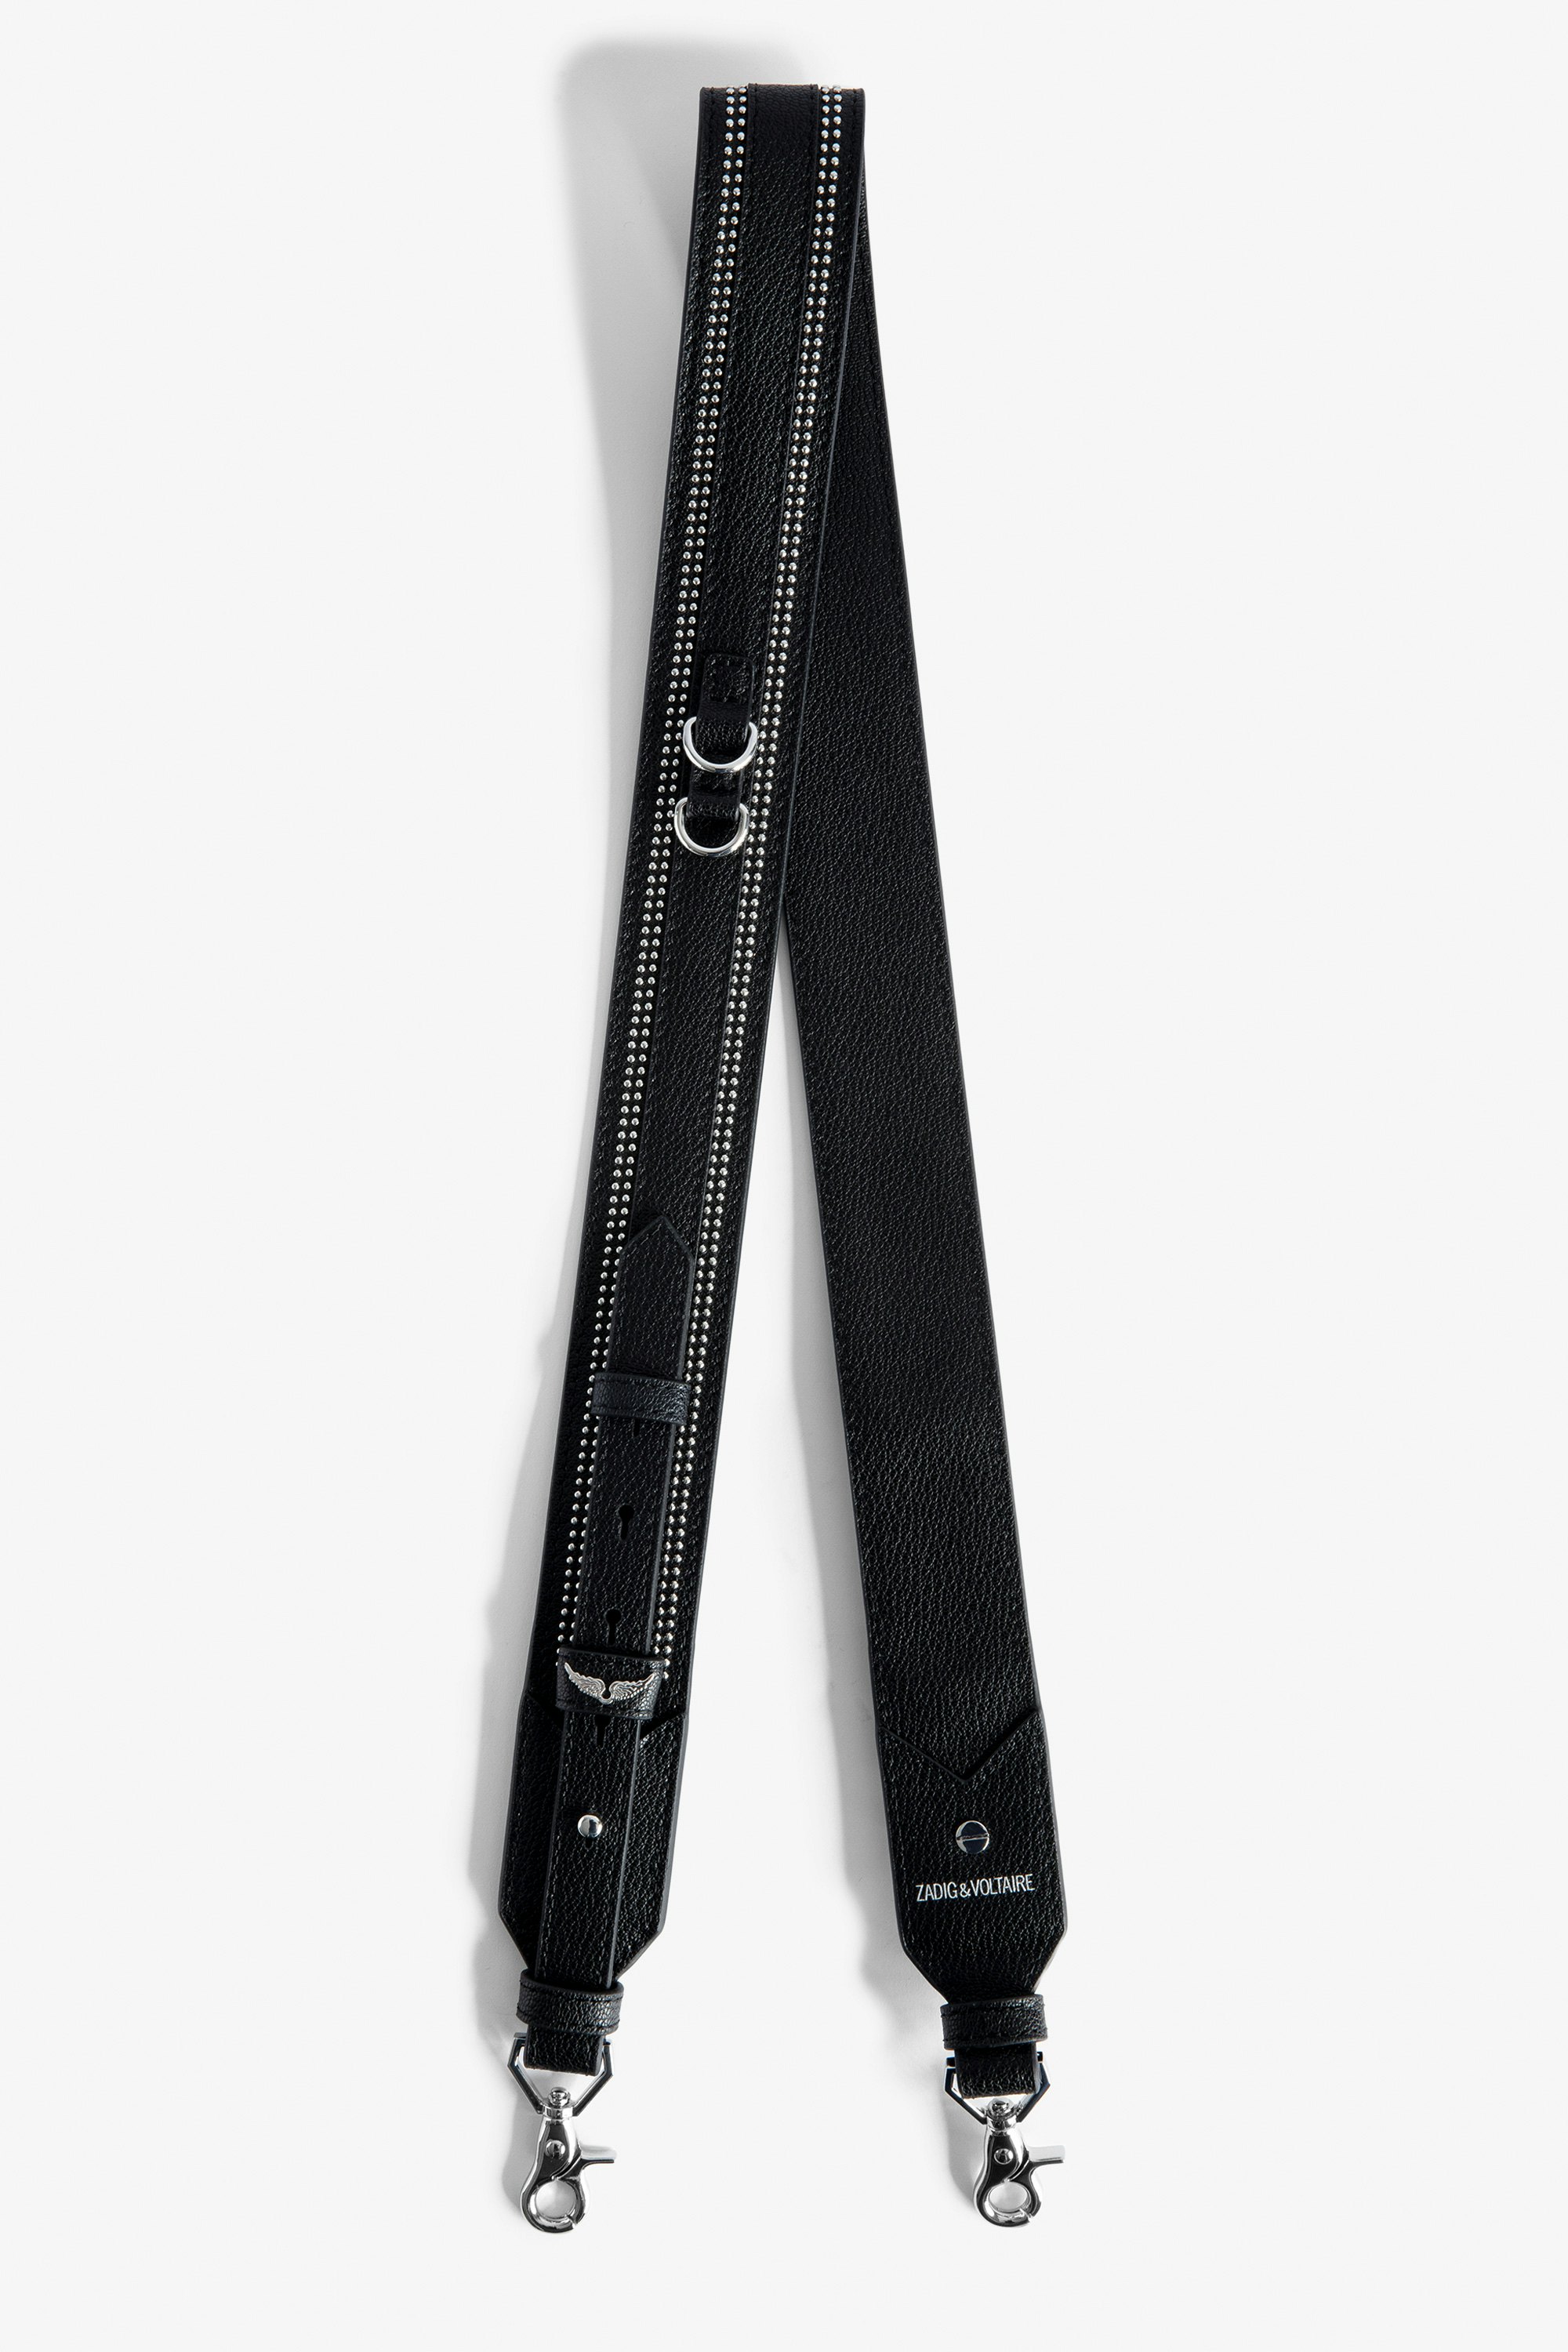 Adjustable Shoulder Strap Women’s adjustable black grained leather shoulder strap with studded trim.